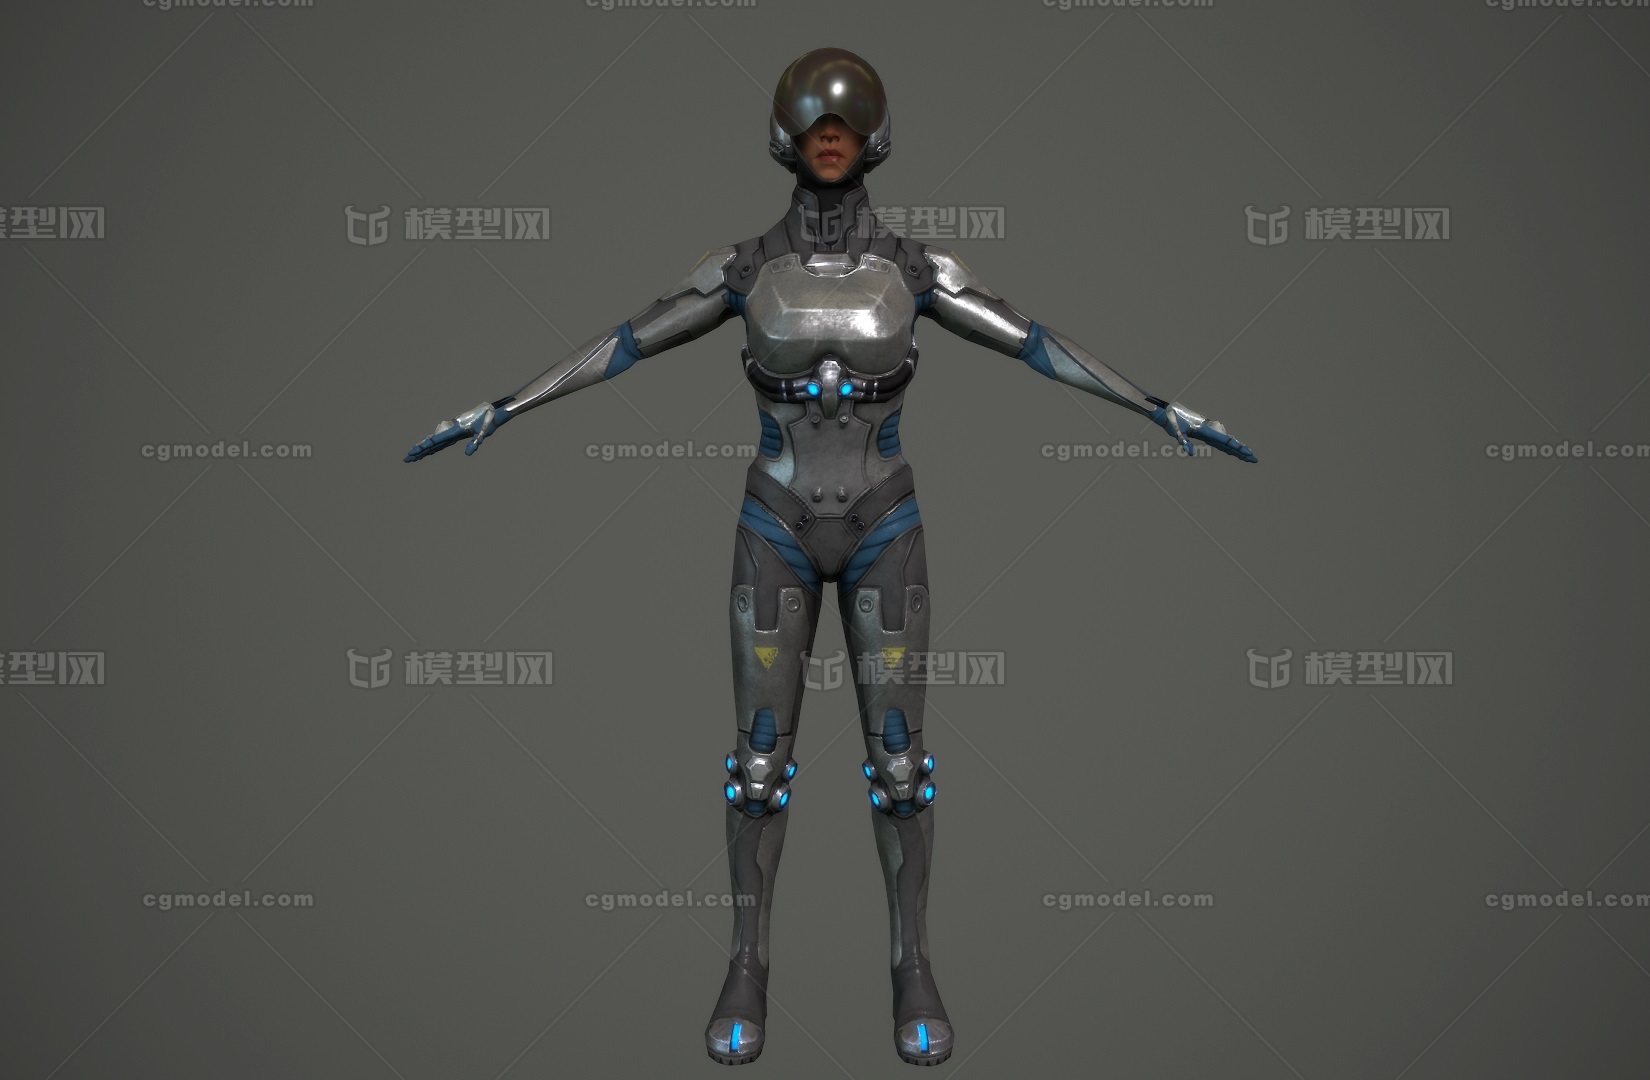 次世代 装甲女奇兵 科幻风格 女战士 未来机器人